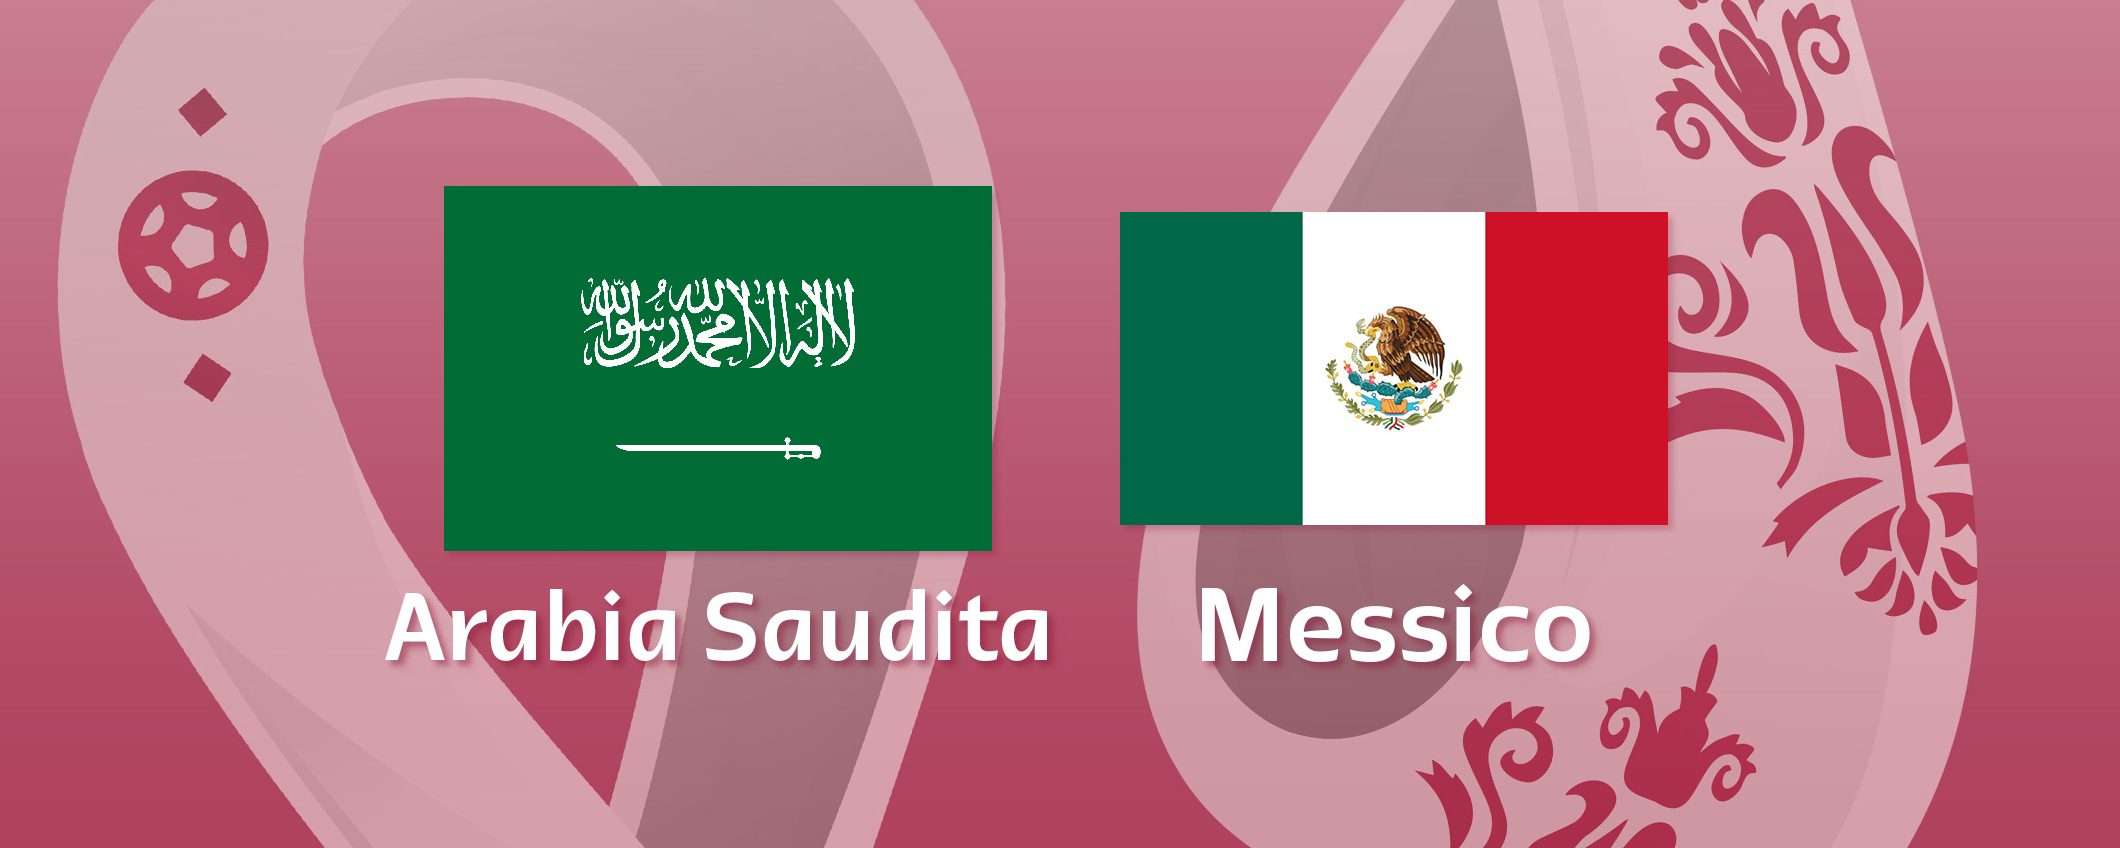 Come vedere Arabia Saudita-Messico in streaming